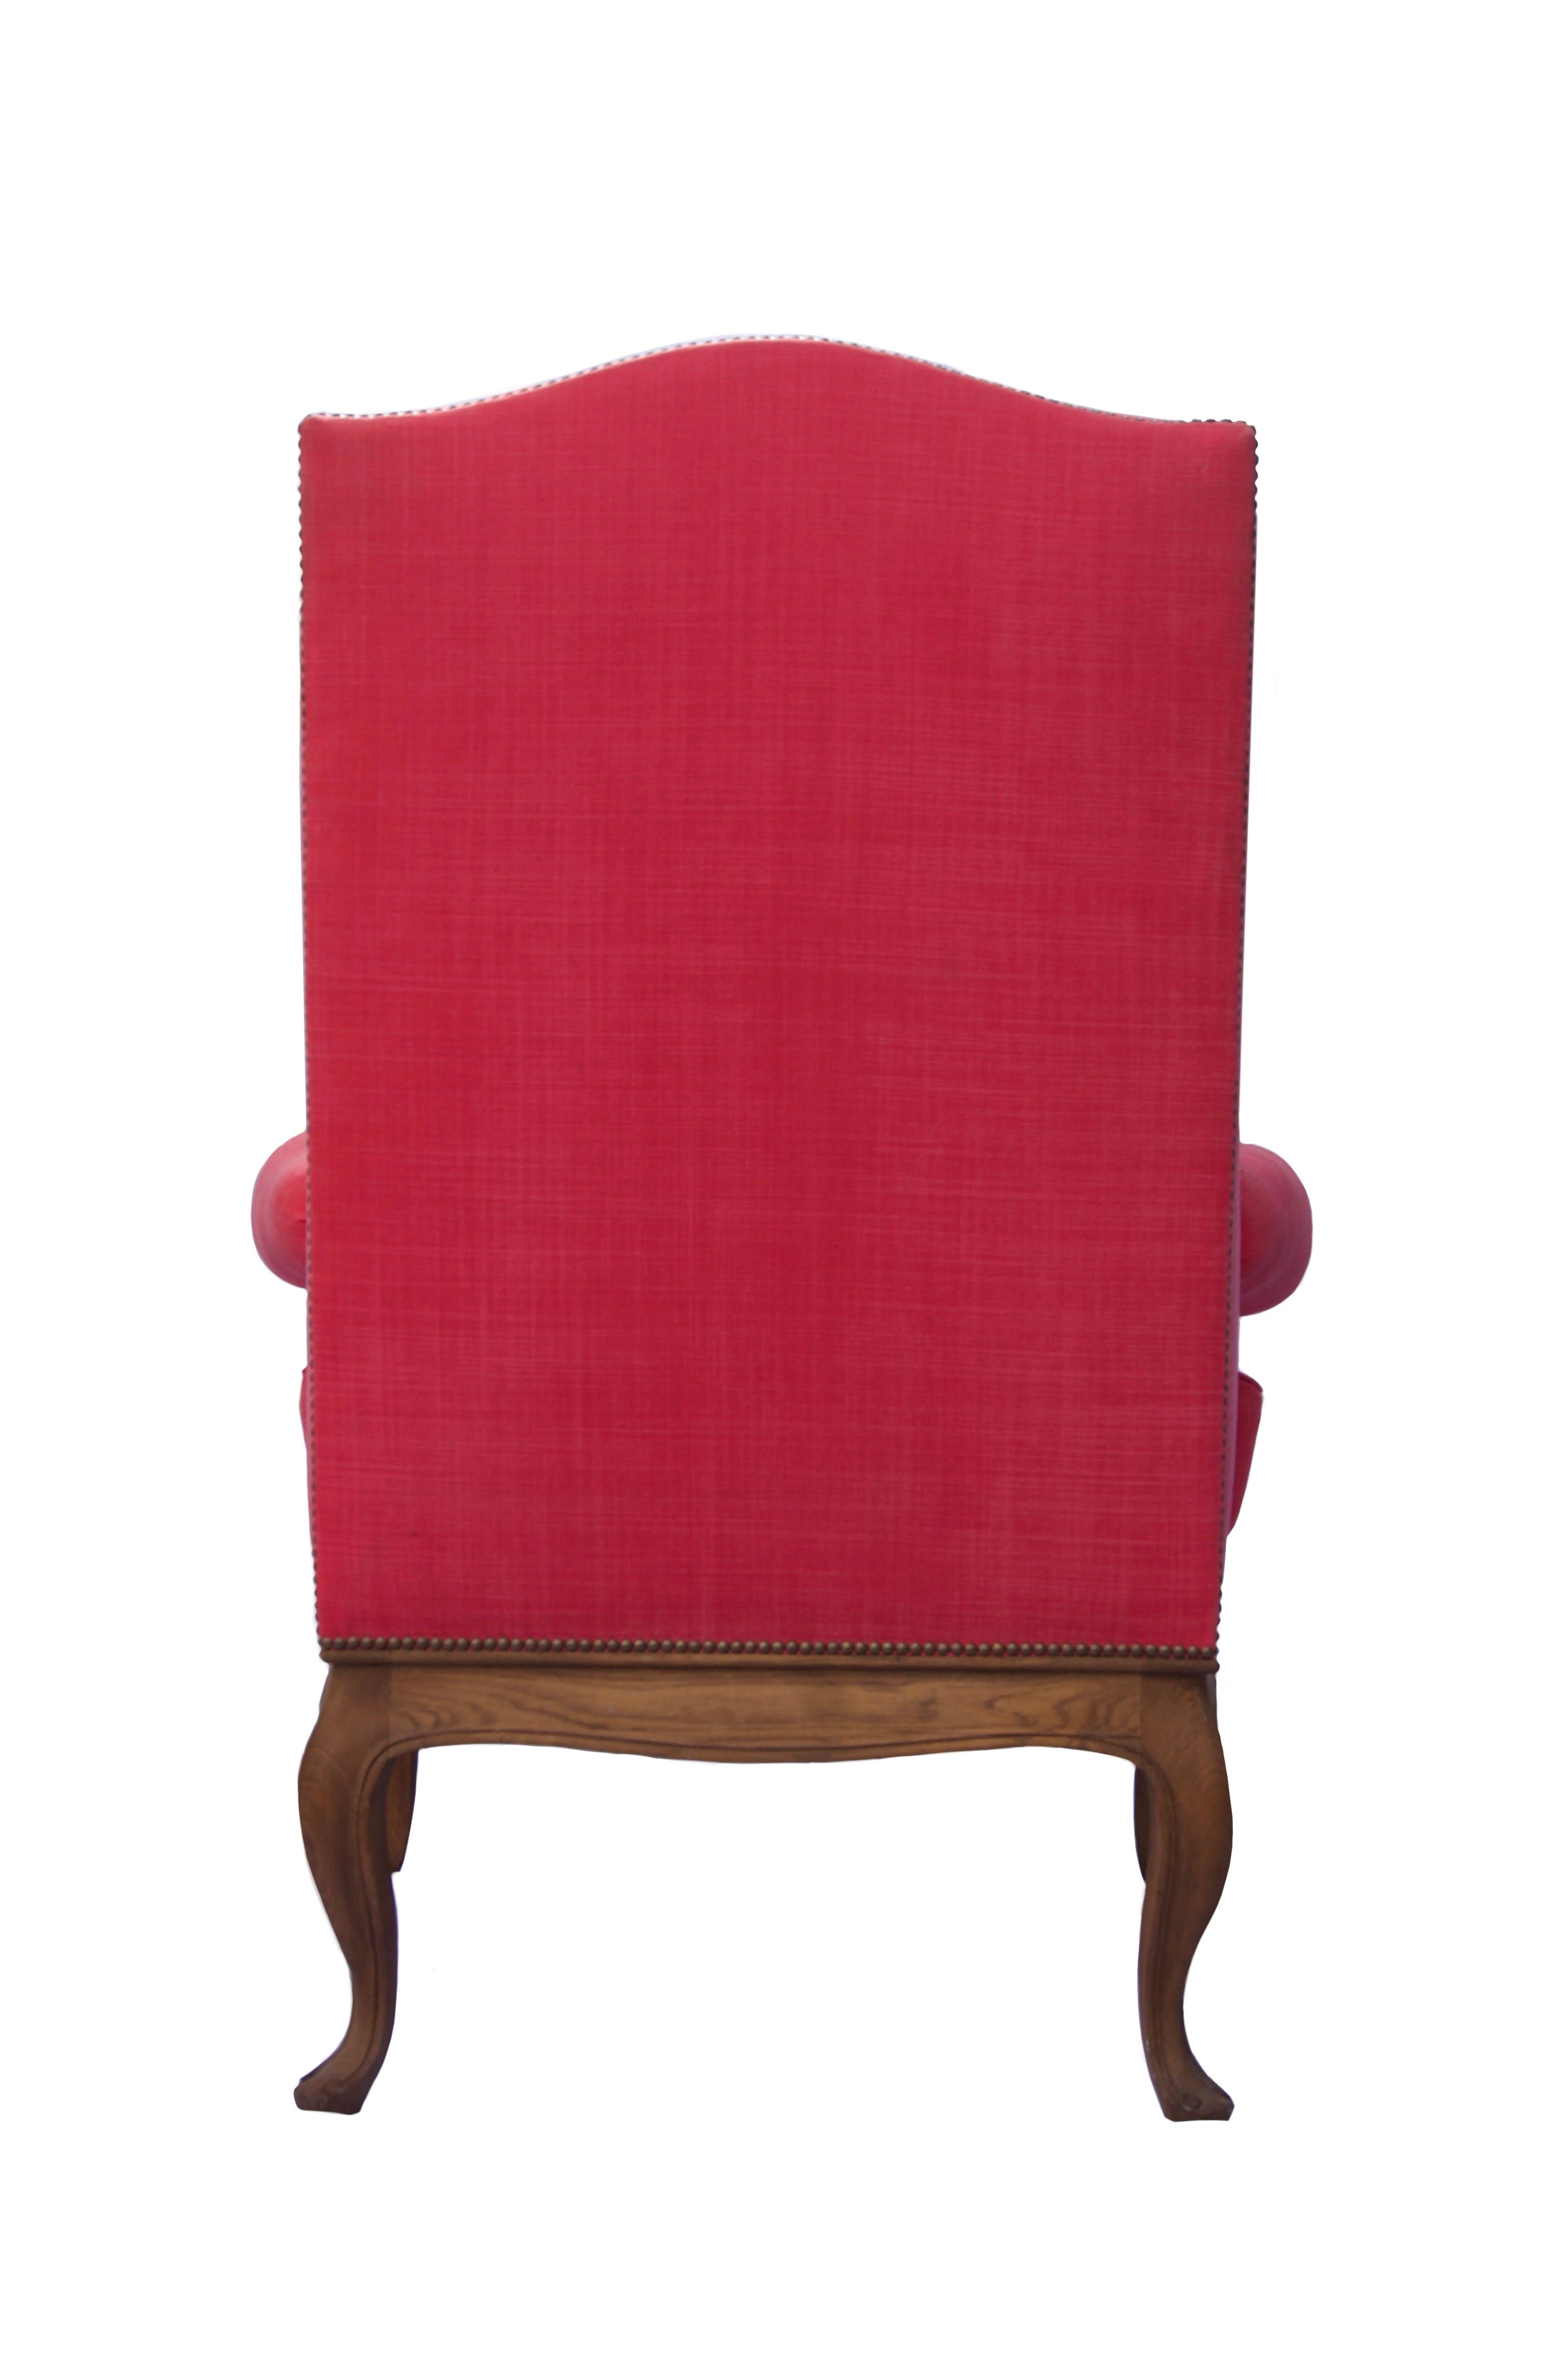 Une chaise à oreilles en chêne de style français, recouverte d'un tissu en lin rose, avec des pieds en chêne naturel.